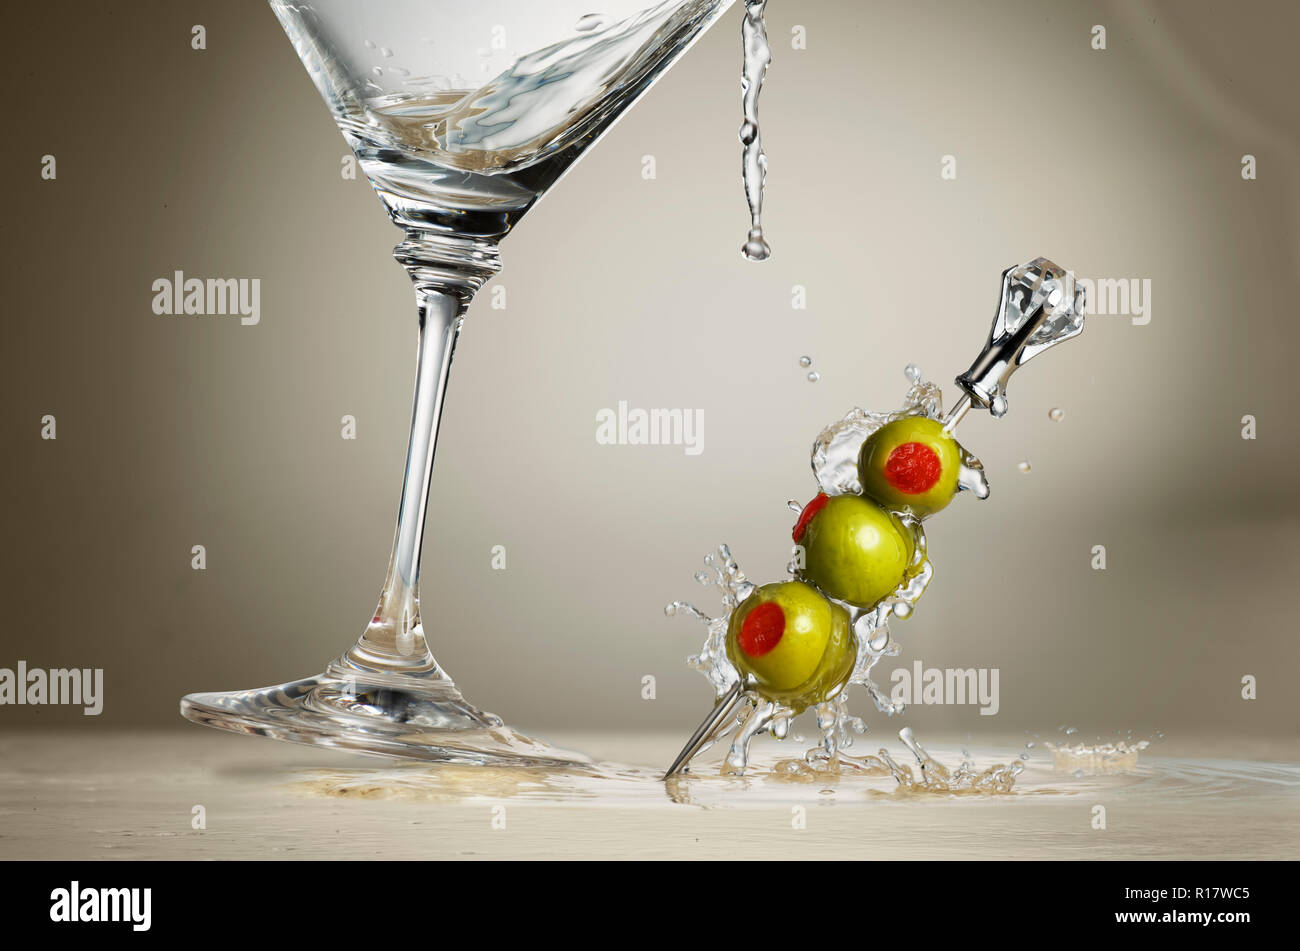 Cropped image of martini glass splashing liquid and olives onto surface, grey background Stock Photo